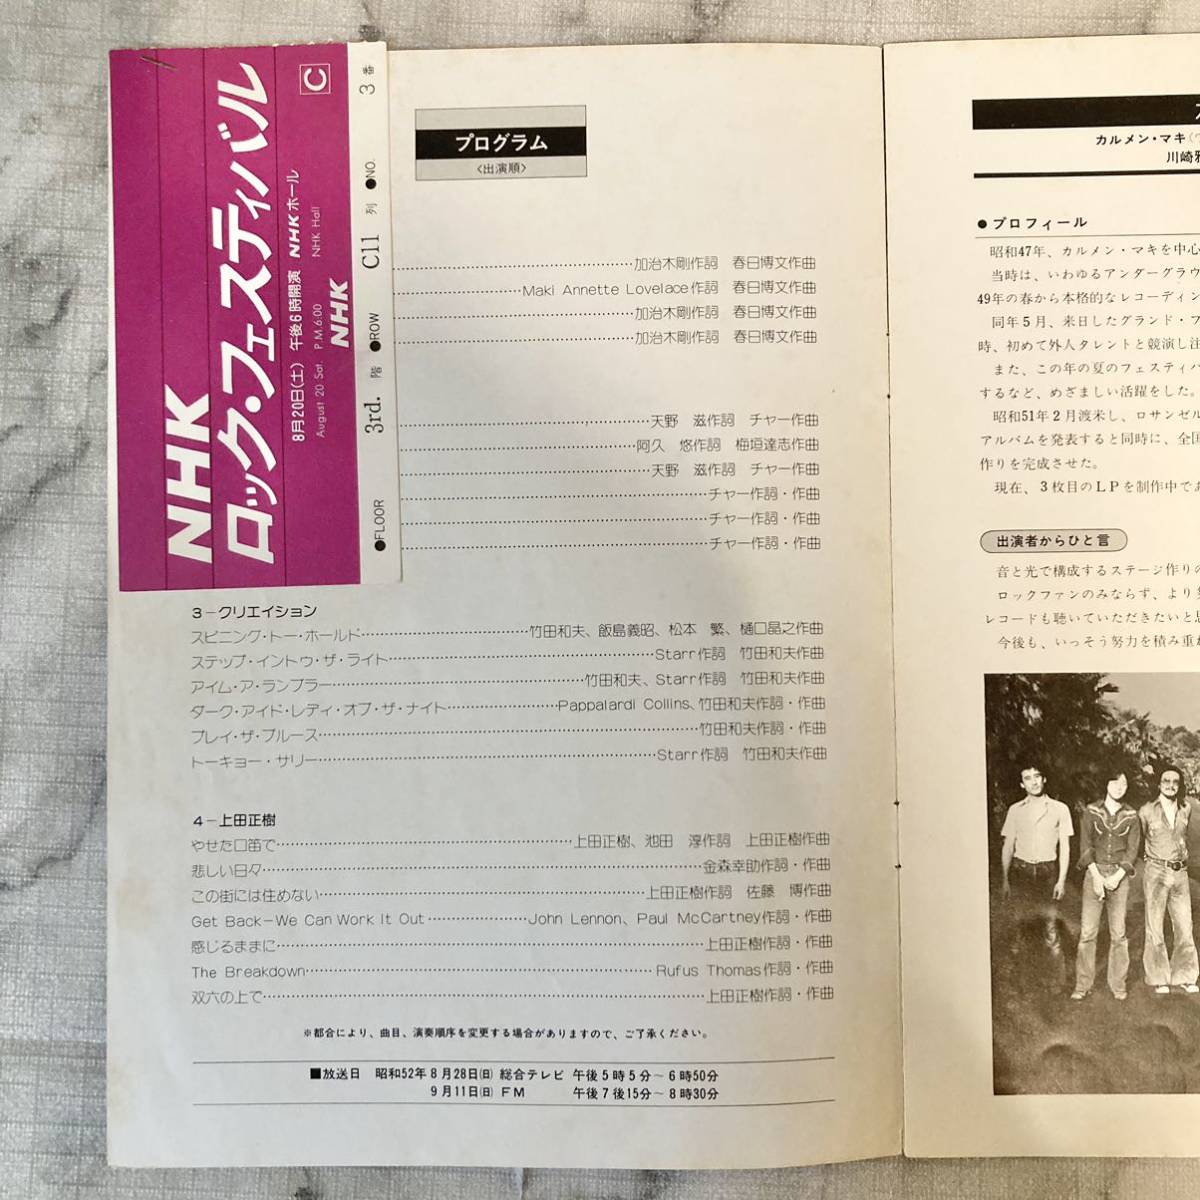  проспект / program /NHK блокировка * фестиваль /1977/52 год /karu men *maki&OZ / коричневый -Char бамбук средний более того человек /klieishon бамбук рисовое поле Kazuo / Ueda Masaki 